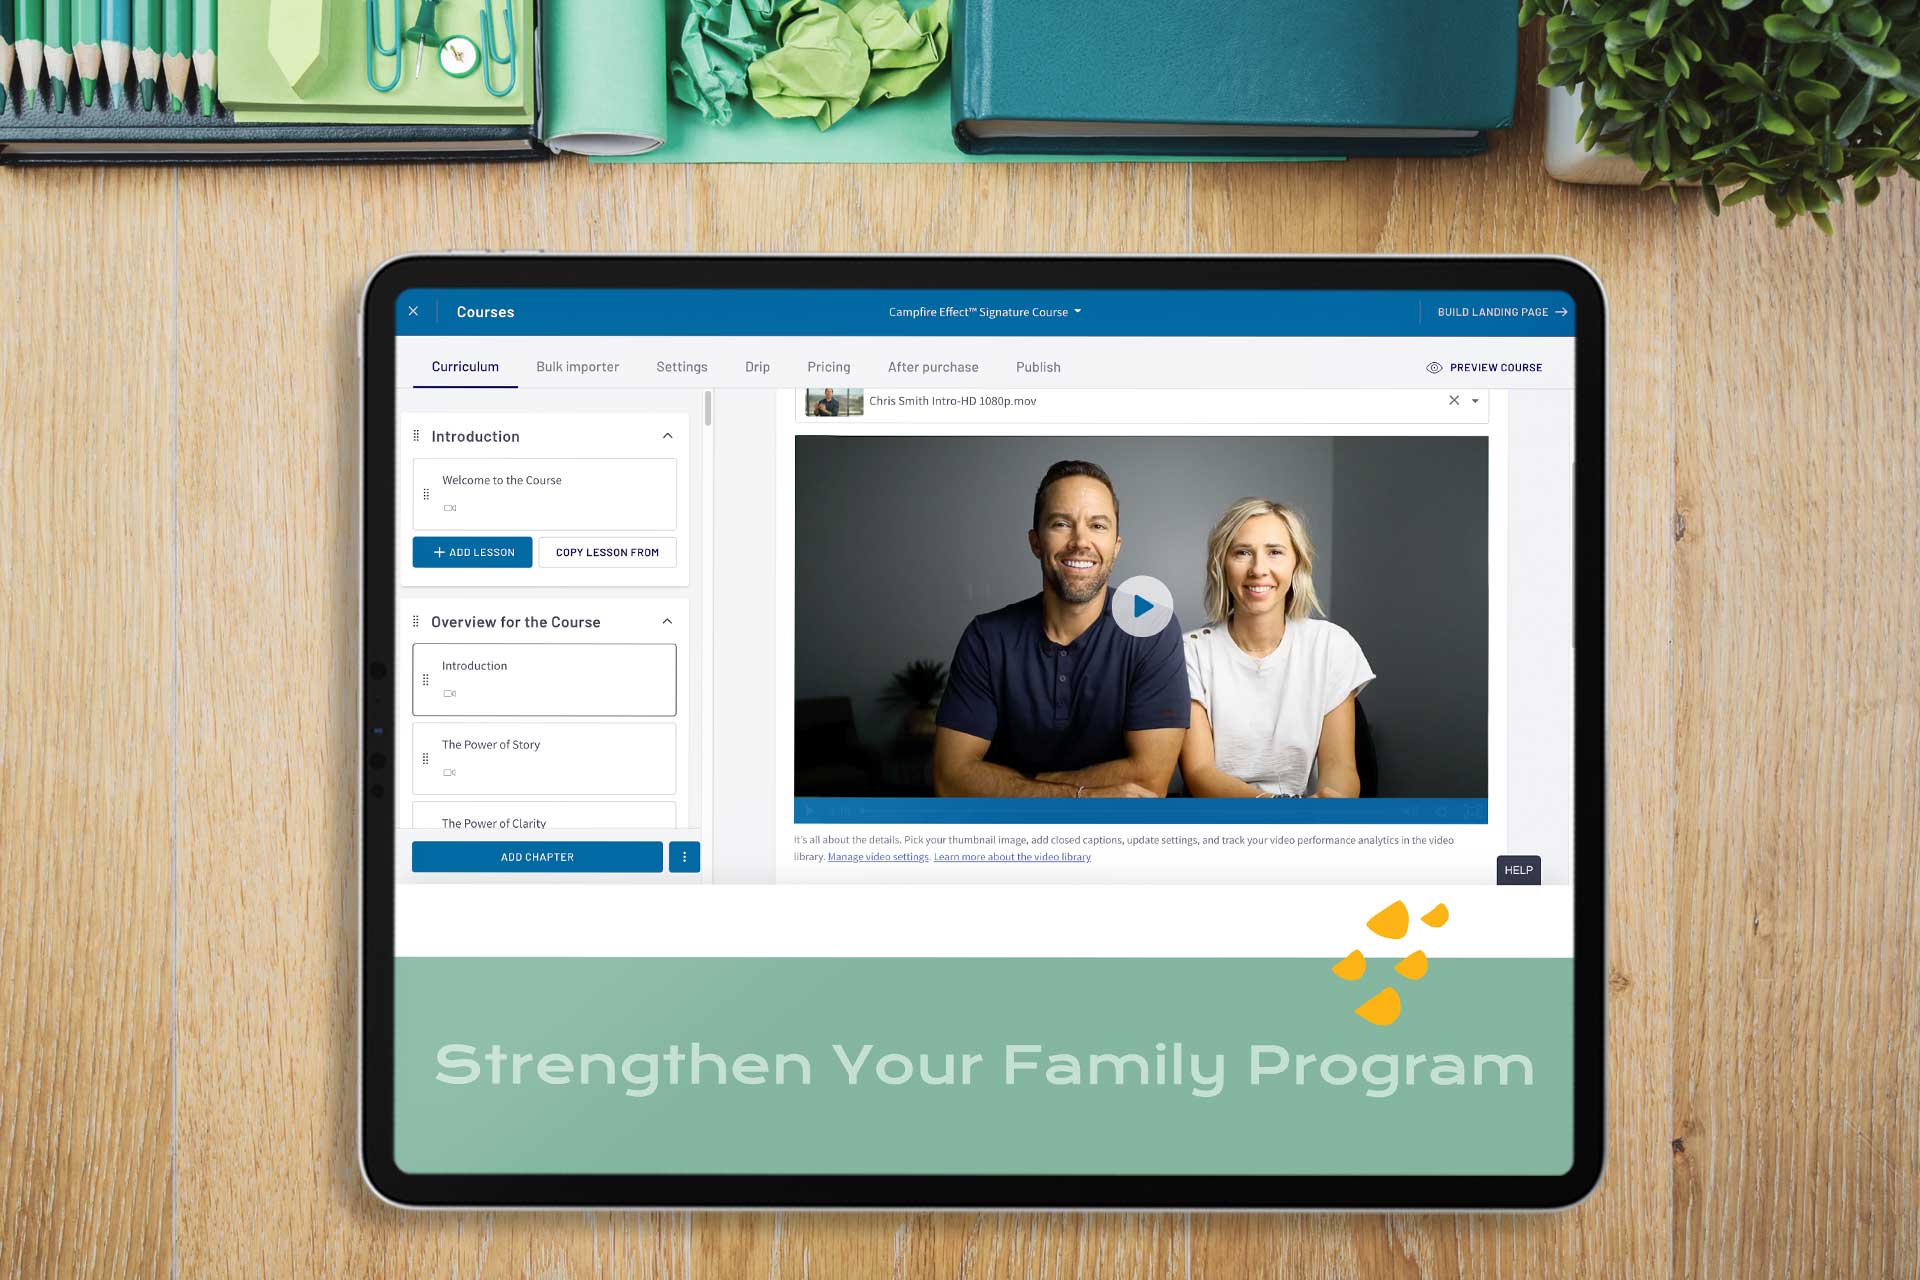 Strengthen Your Family Program